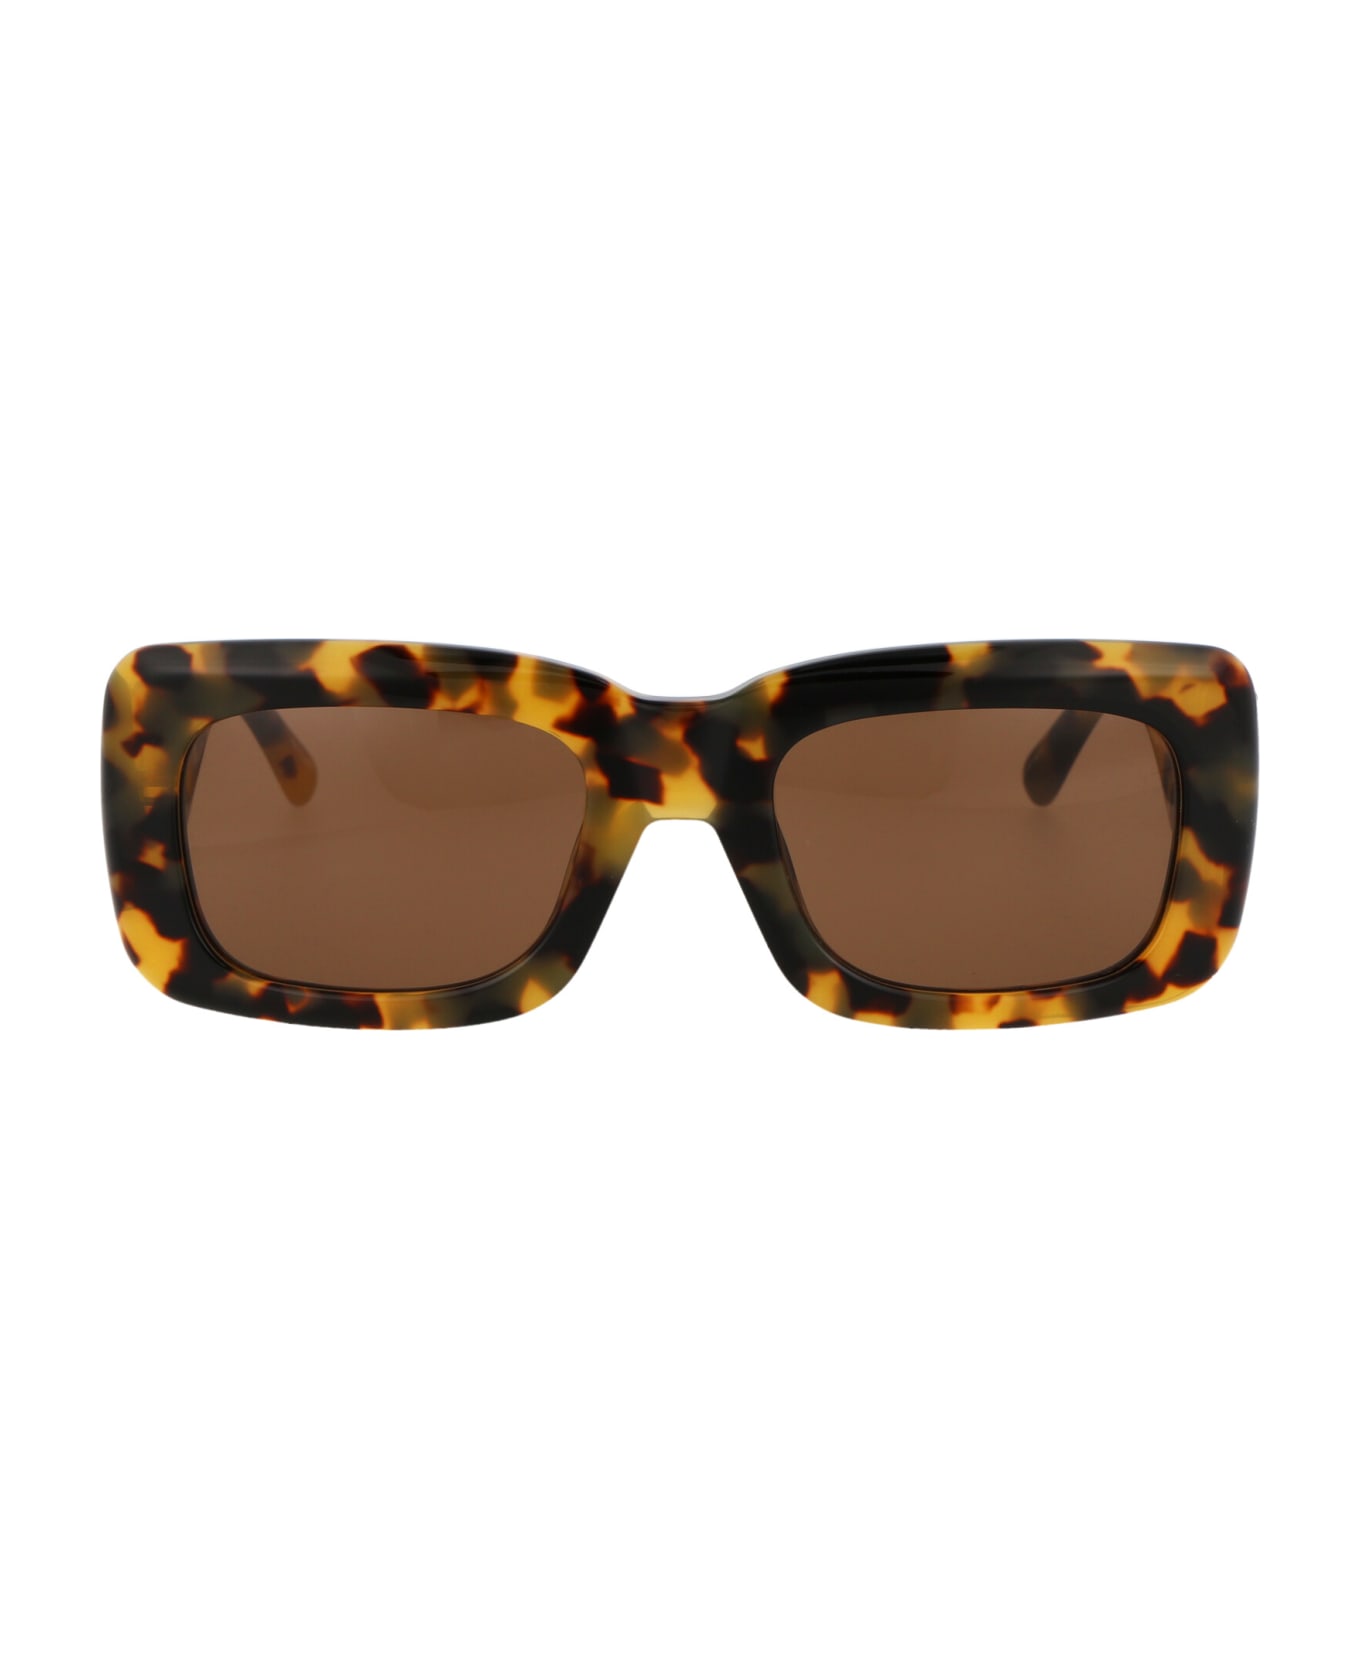 The Attico Marfa Sunglasses - T-SHELL/YELLOWGOLD/BROWN